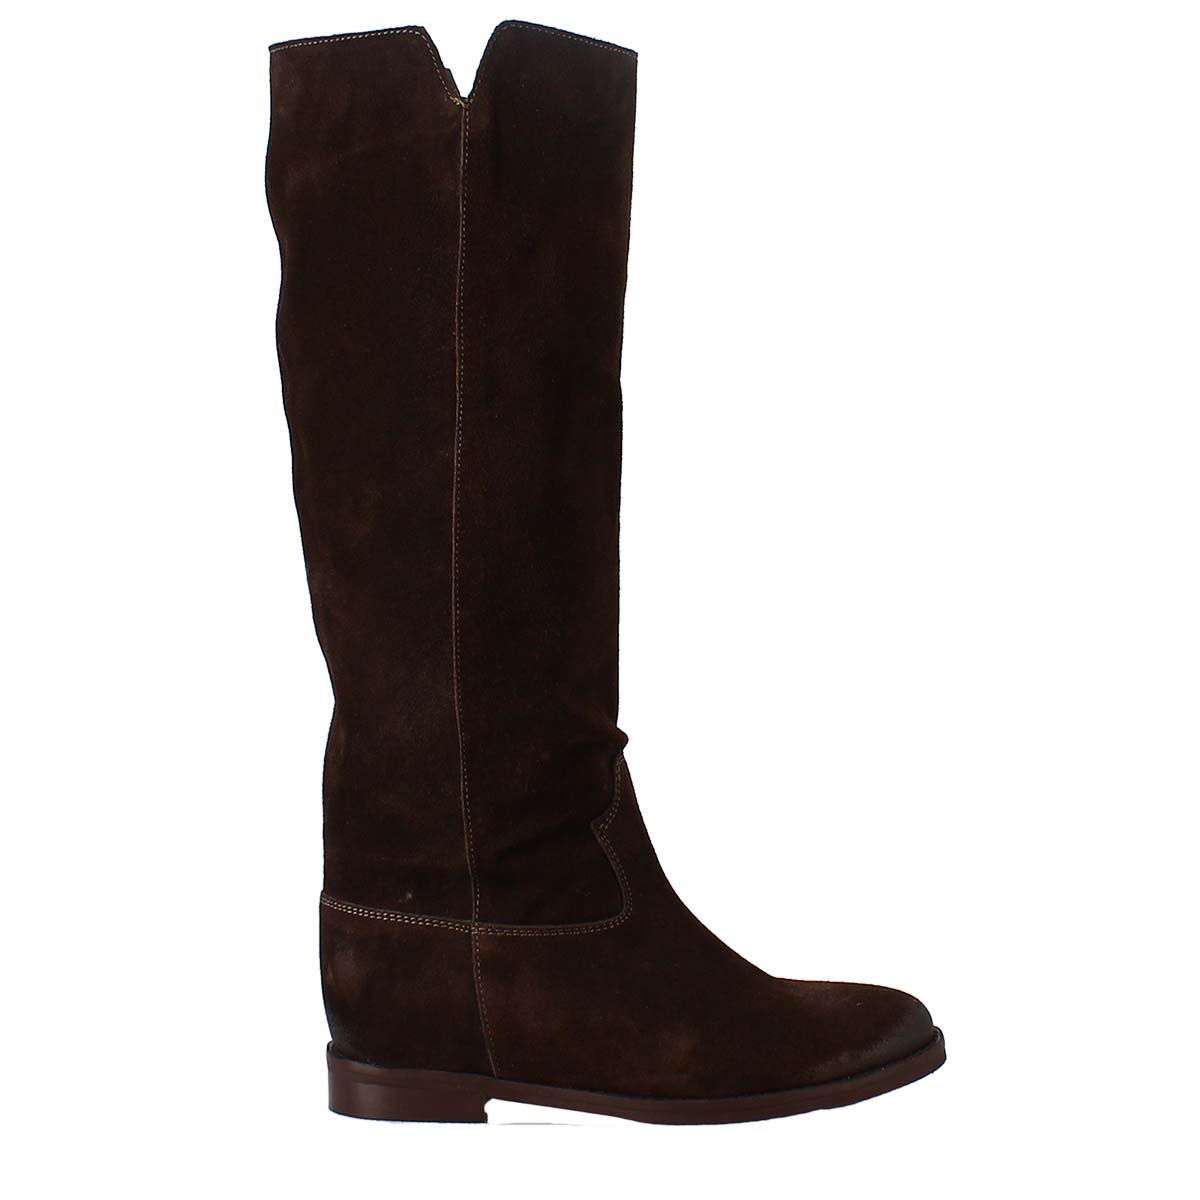 Low heel knee boot in dark brown suede leather